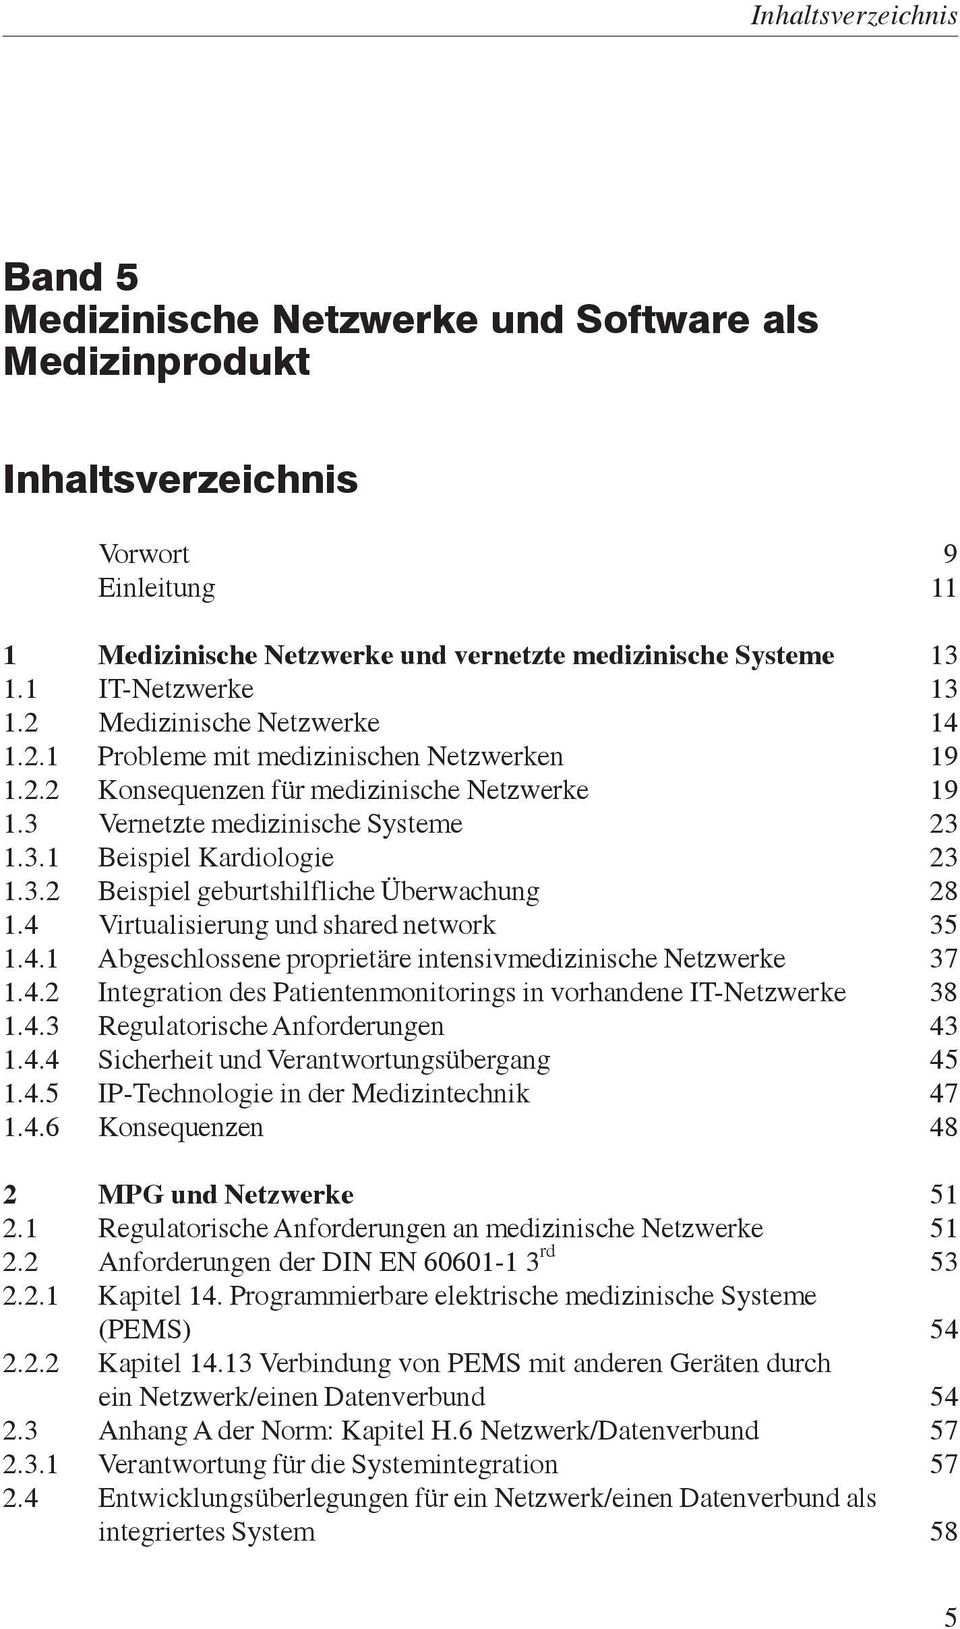 4 Virtualisierung und shared network 35 1.4.1 Abgeschlossene proprietäre intensivmedizinische Netzwerke 37 1.4.2 Integration des Patientenmonitorings in vorhandene IT-Netzwerke 38 1.4.3 Regulatorische Anforderungen 43 1.